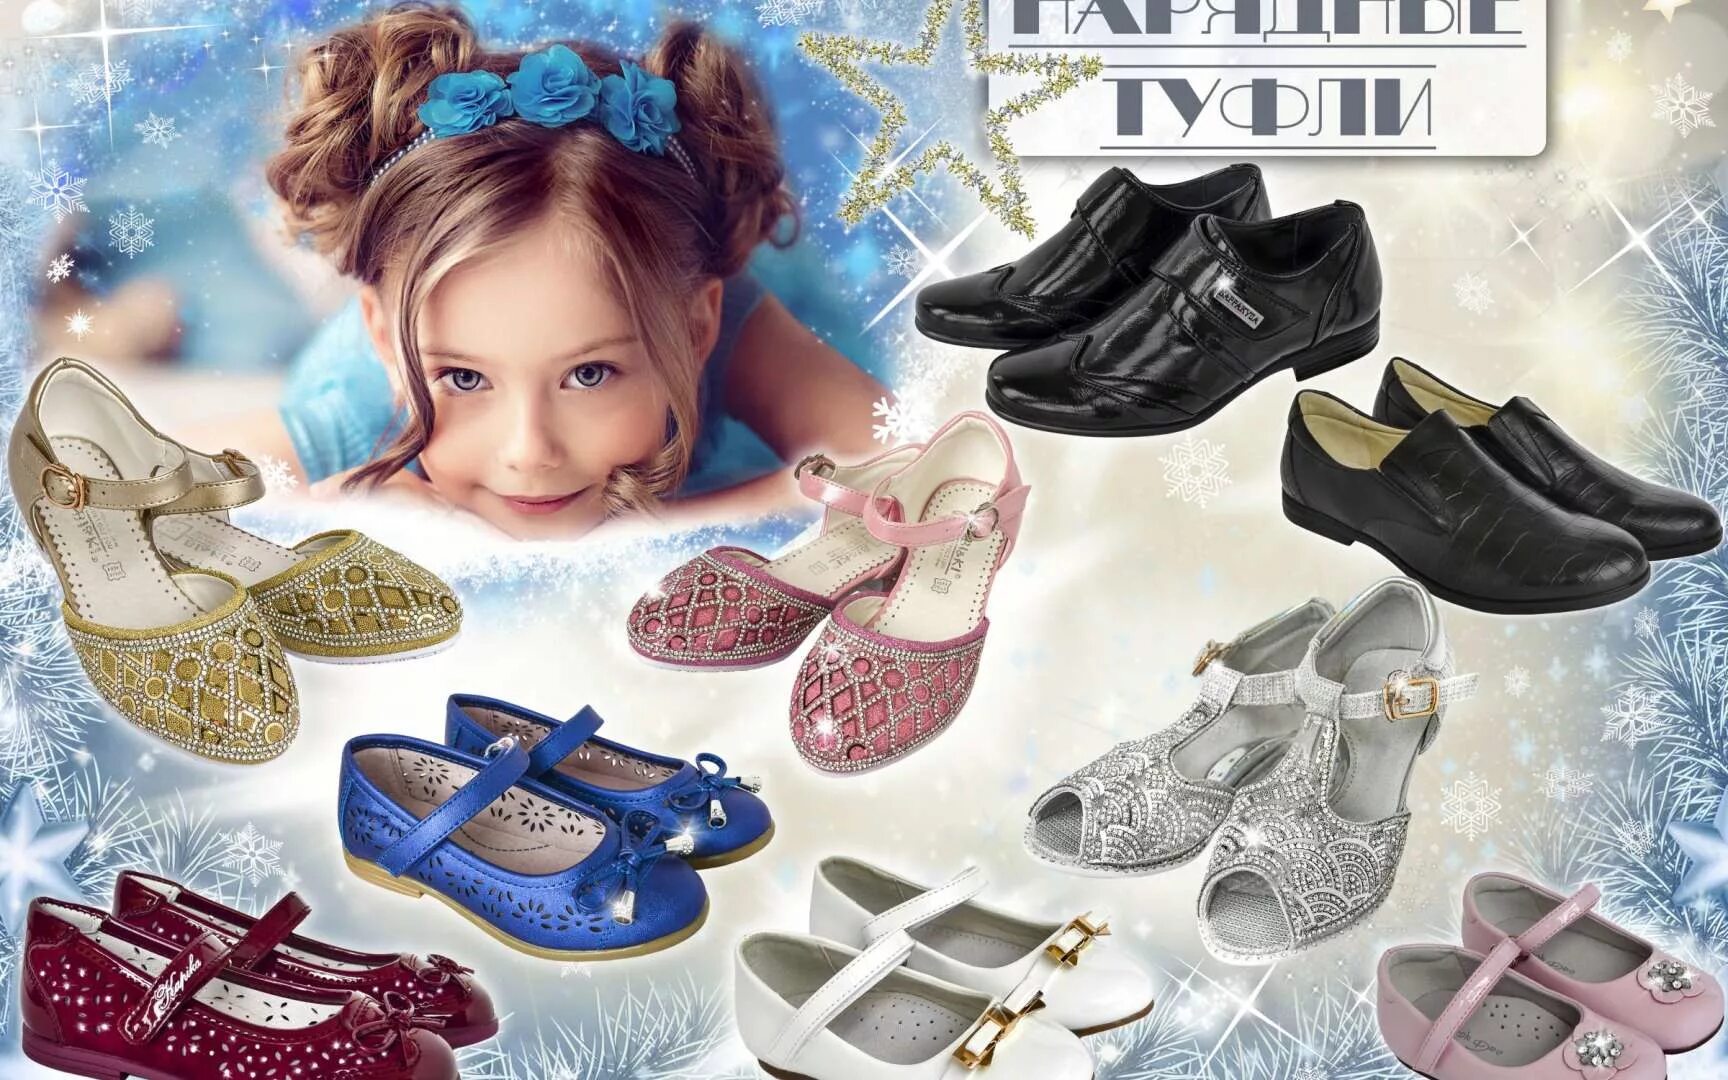 Каталог детской обуви интернет магазин. Детская обувь реклама. Обувь для детей. Дети реклама обуви. Реклама обуви.